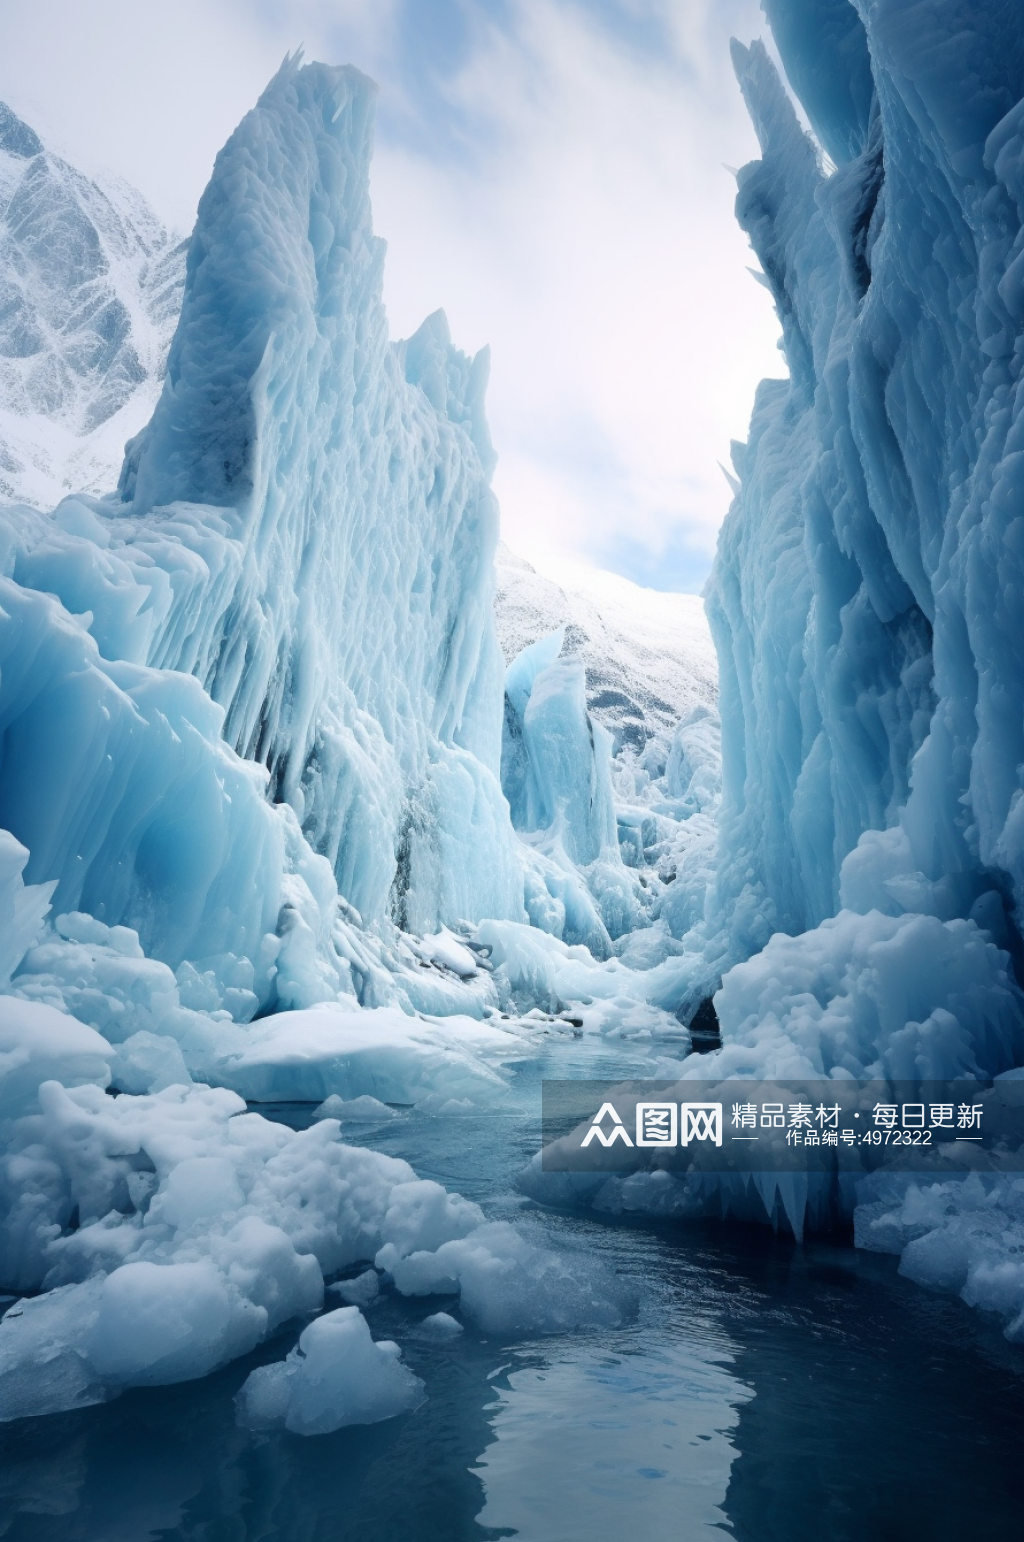 AI数字艺术浪漫冬季冰川风光摄影图片素材